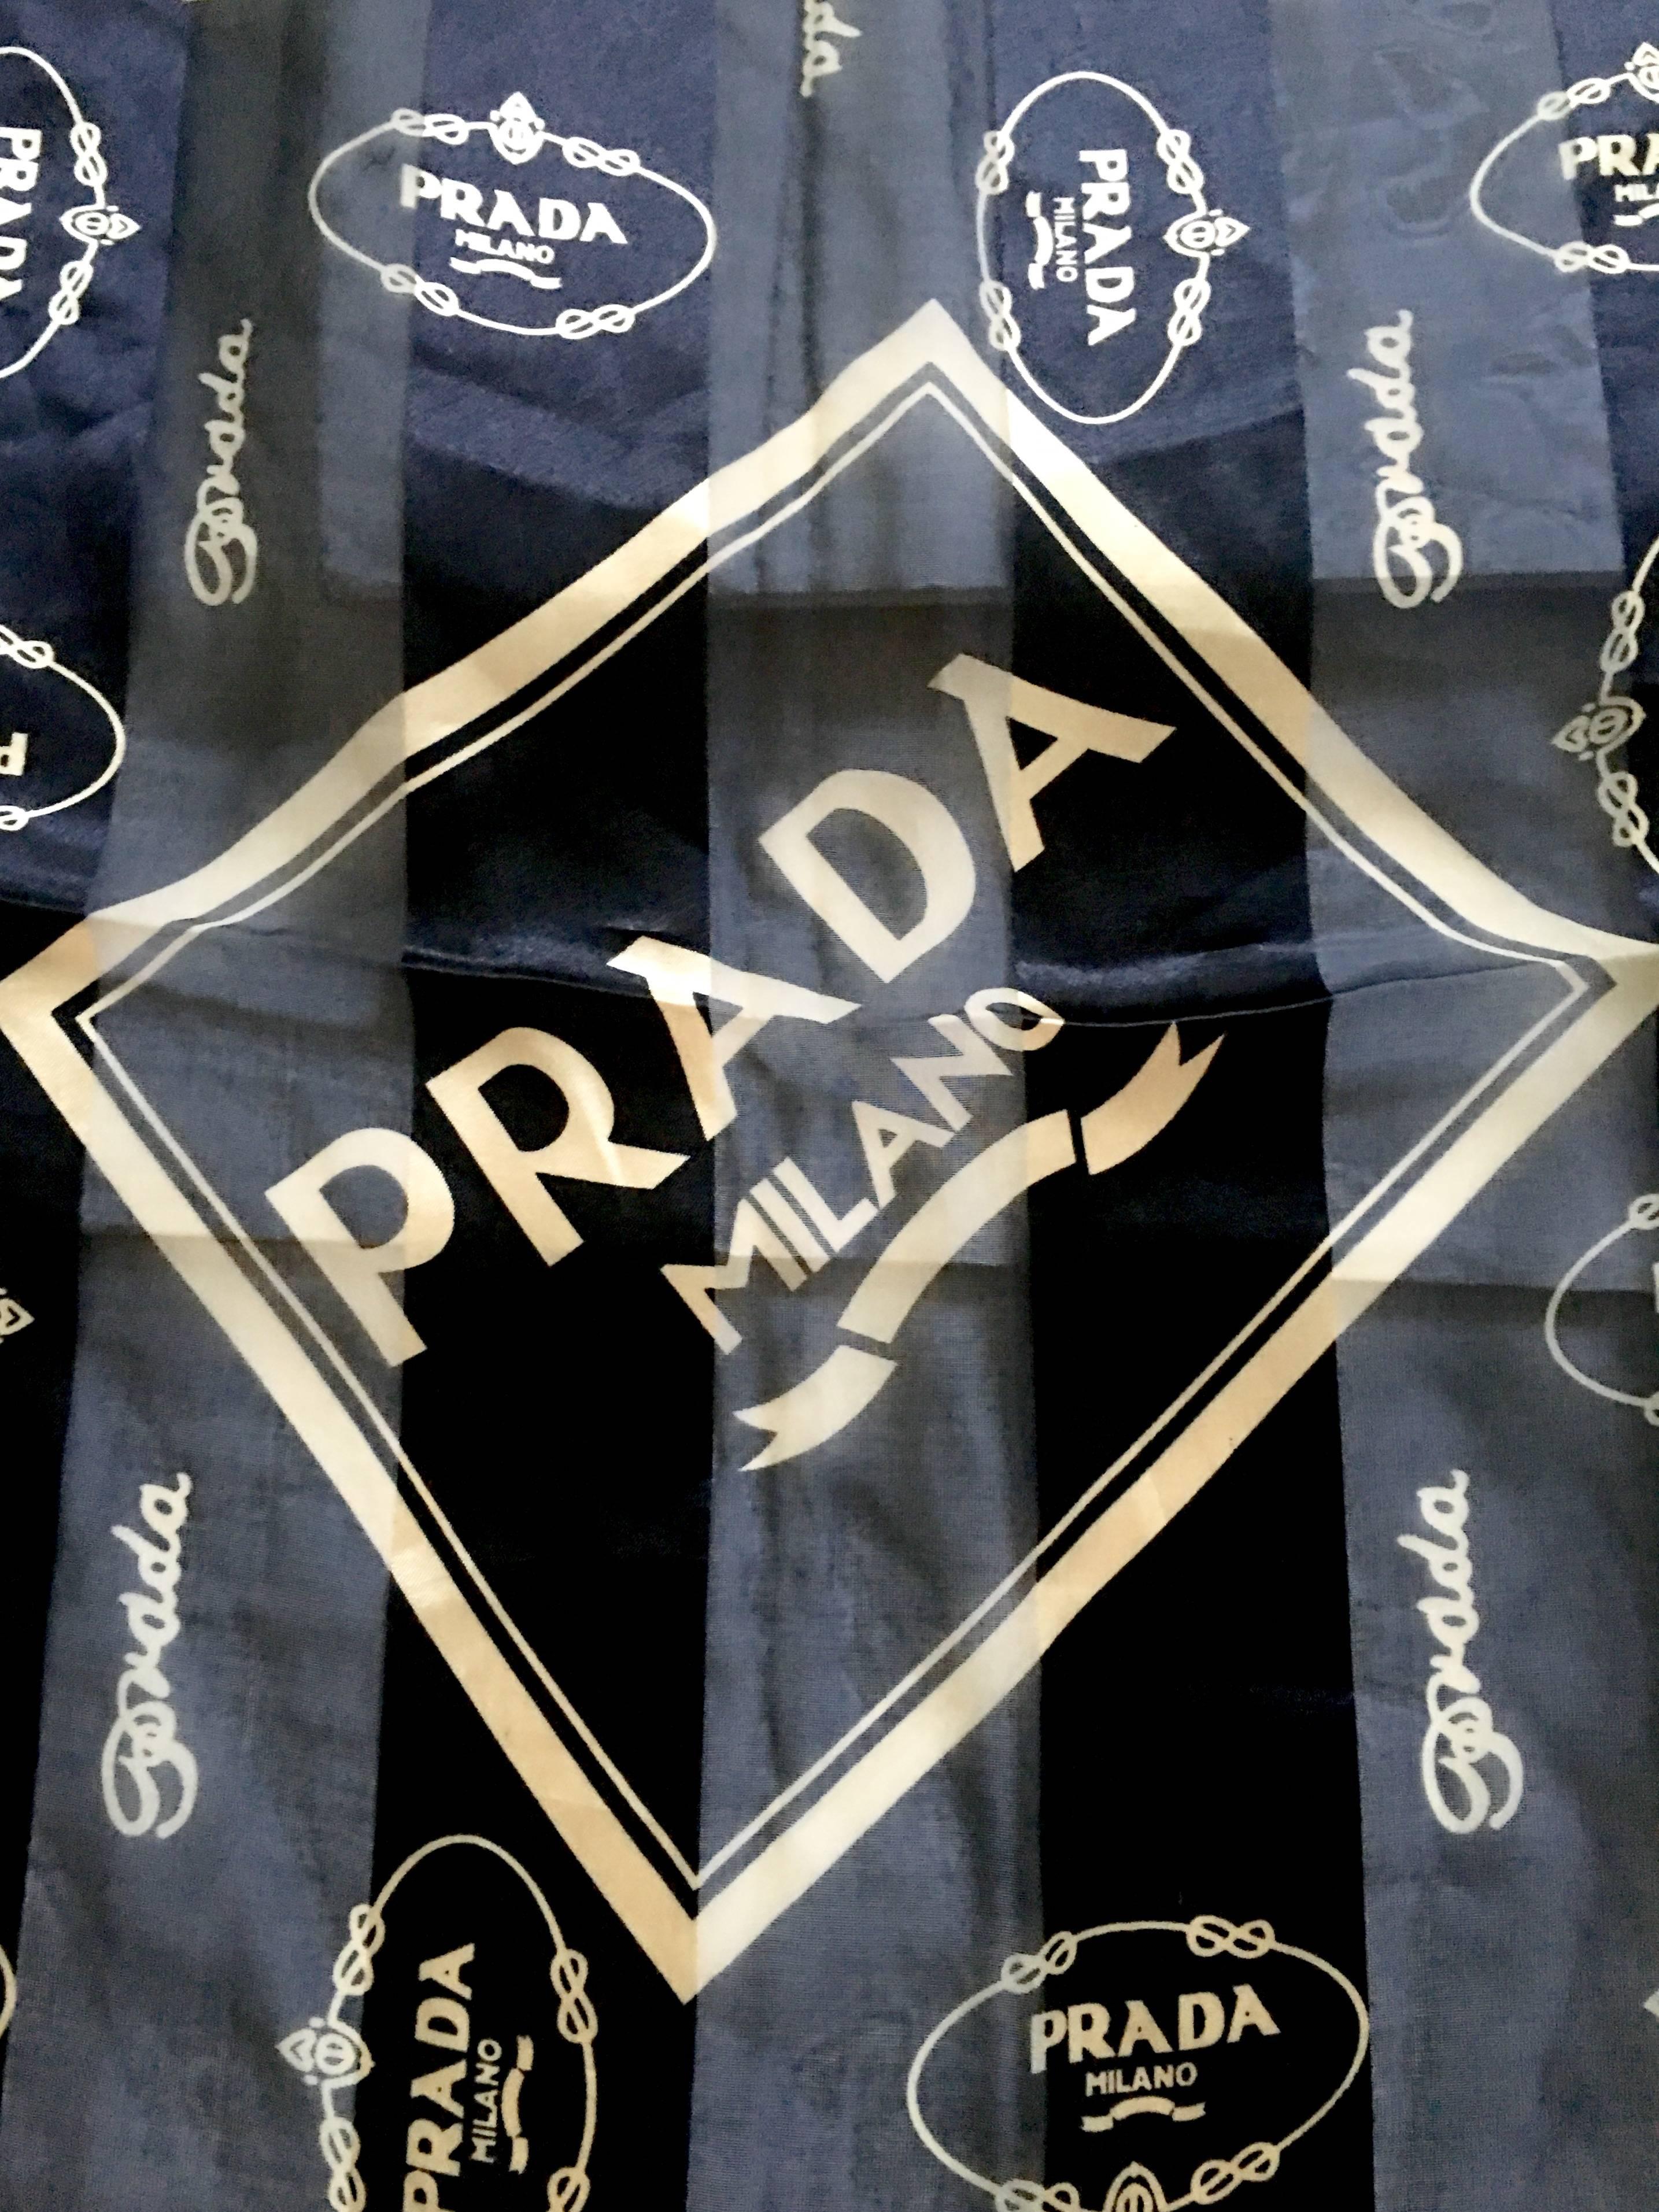 Noir Prada Milano - Écharpe en mousseline de soie rayée noire et or avec logo, vintage